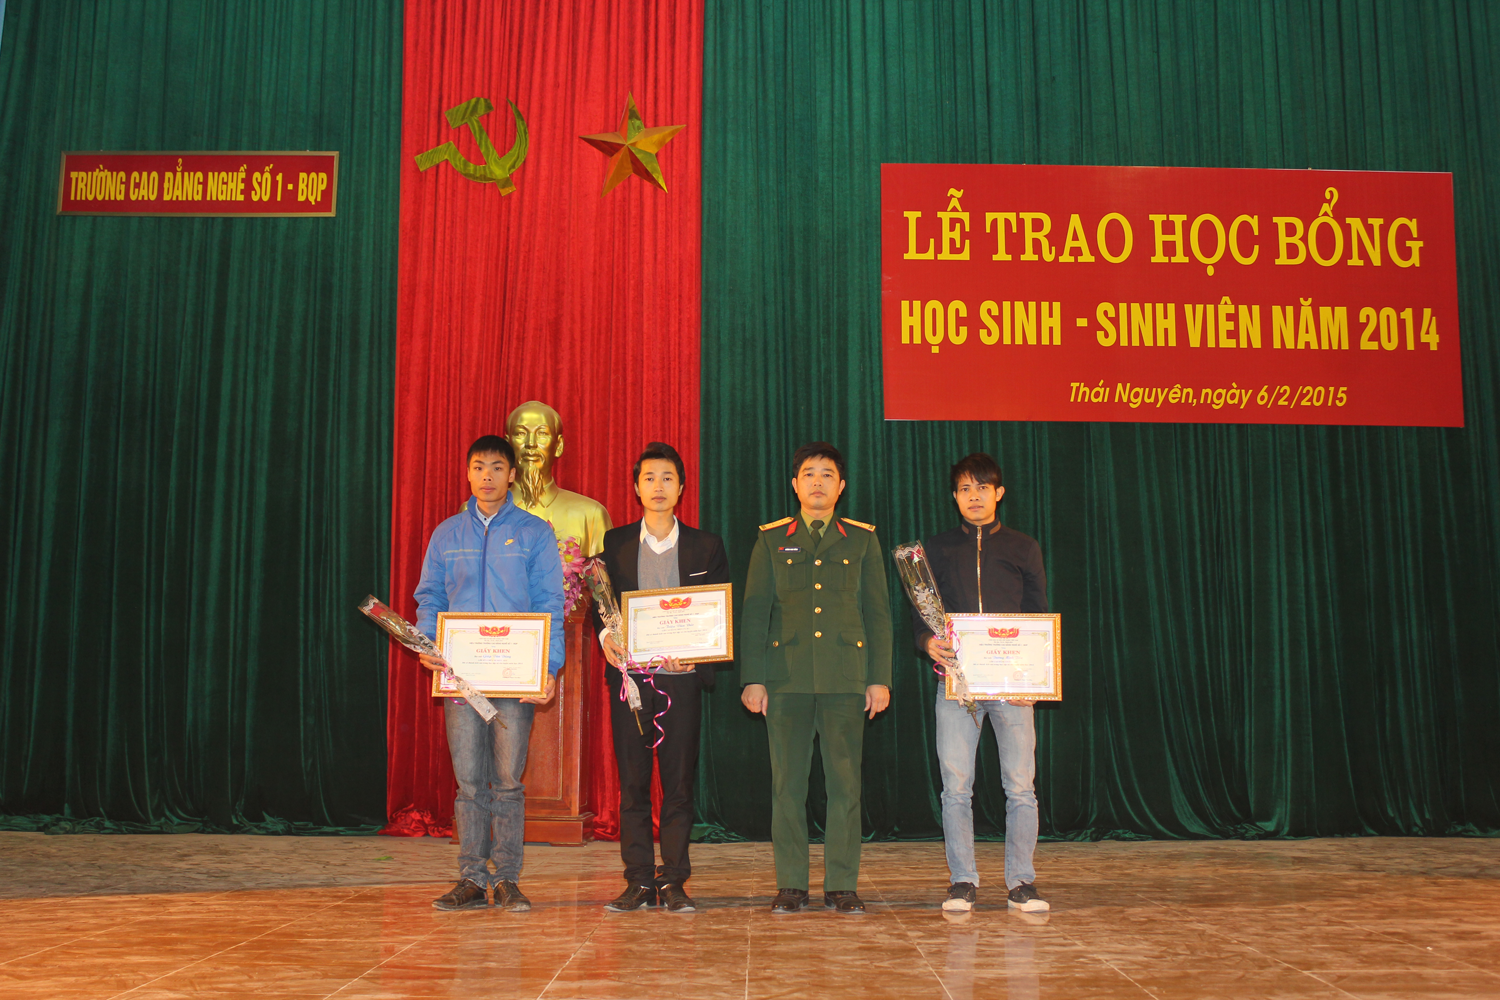 Đồng chí Trung tá Dương Nam Dũng – Phó Hiệu trưởng nhà trường trao thưởng cho các sinh viên